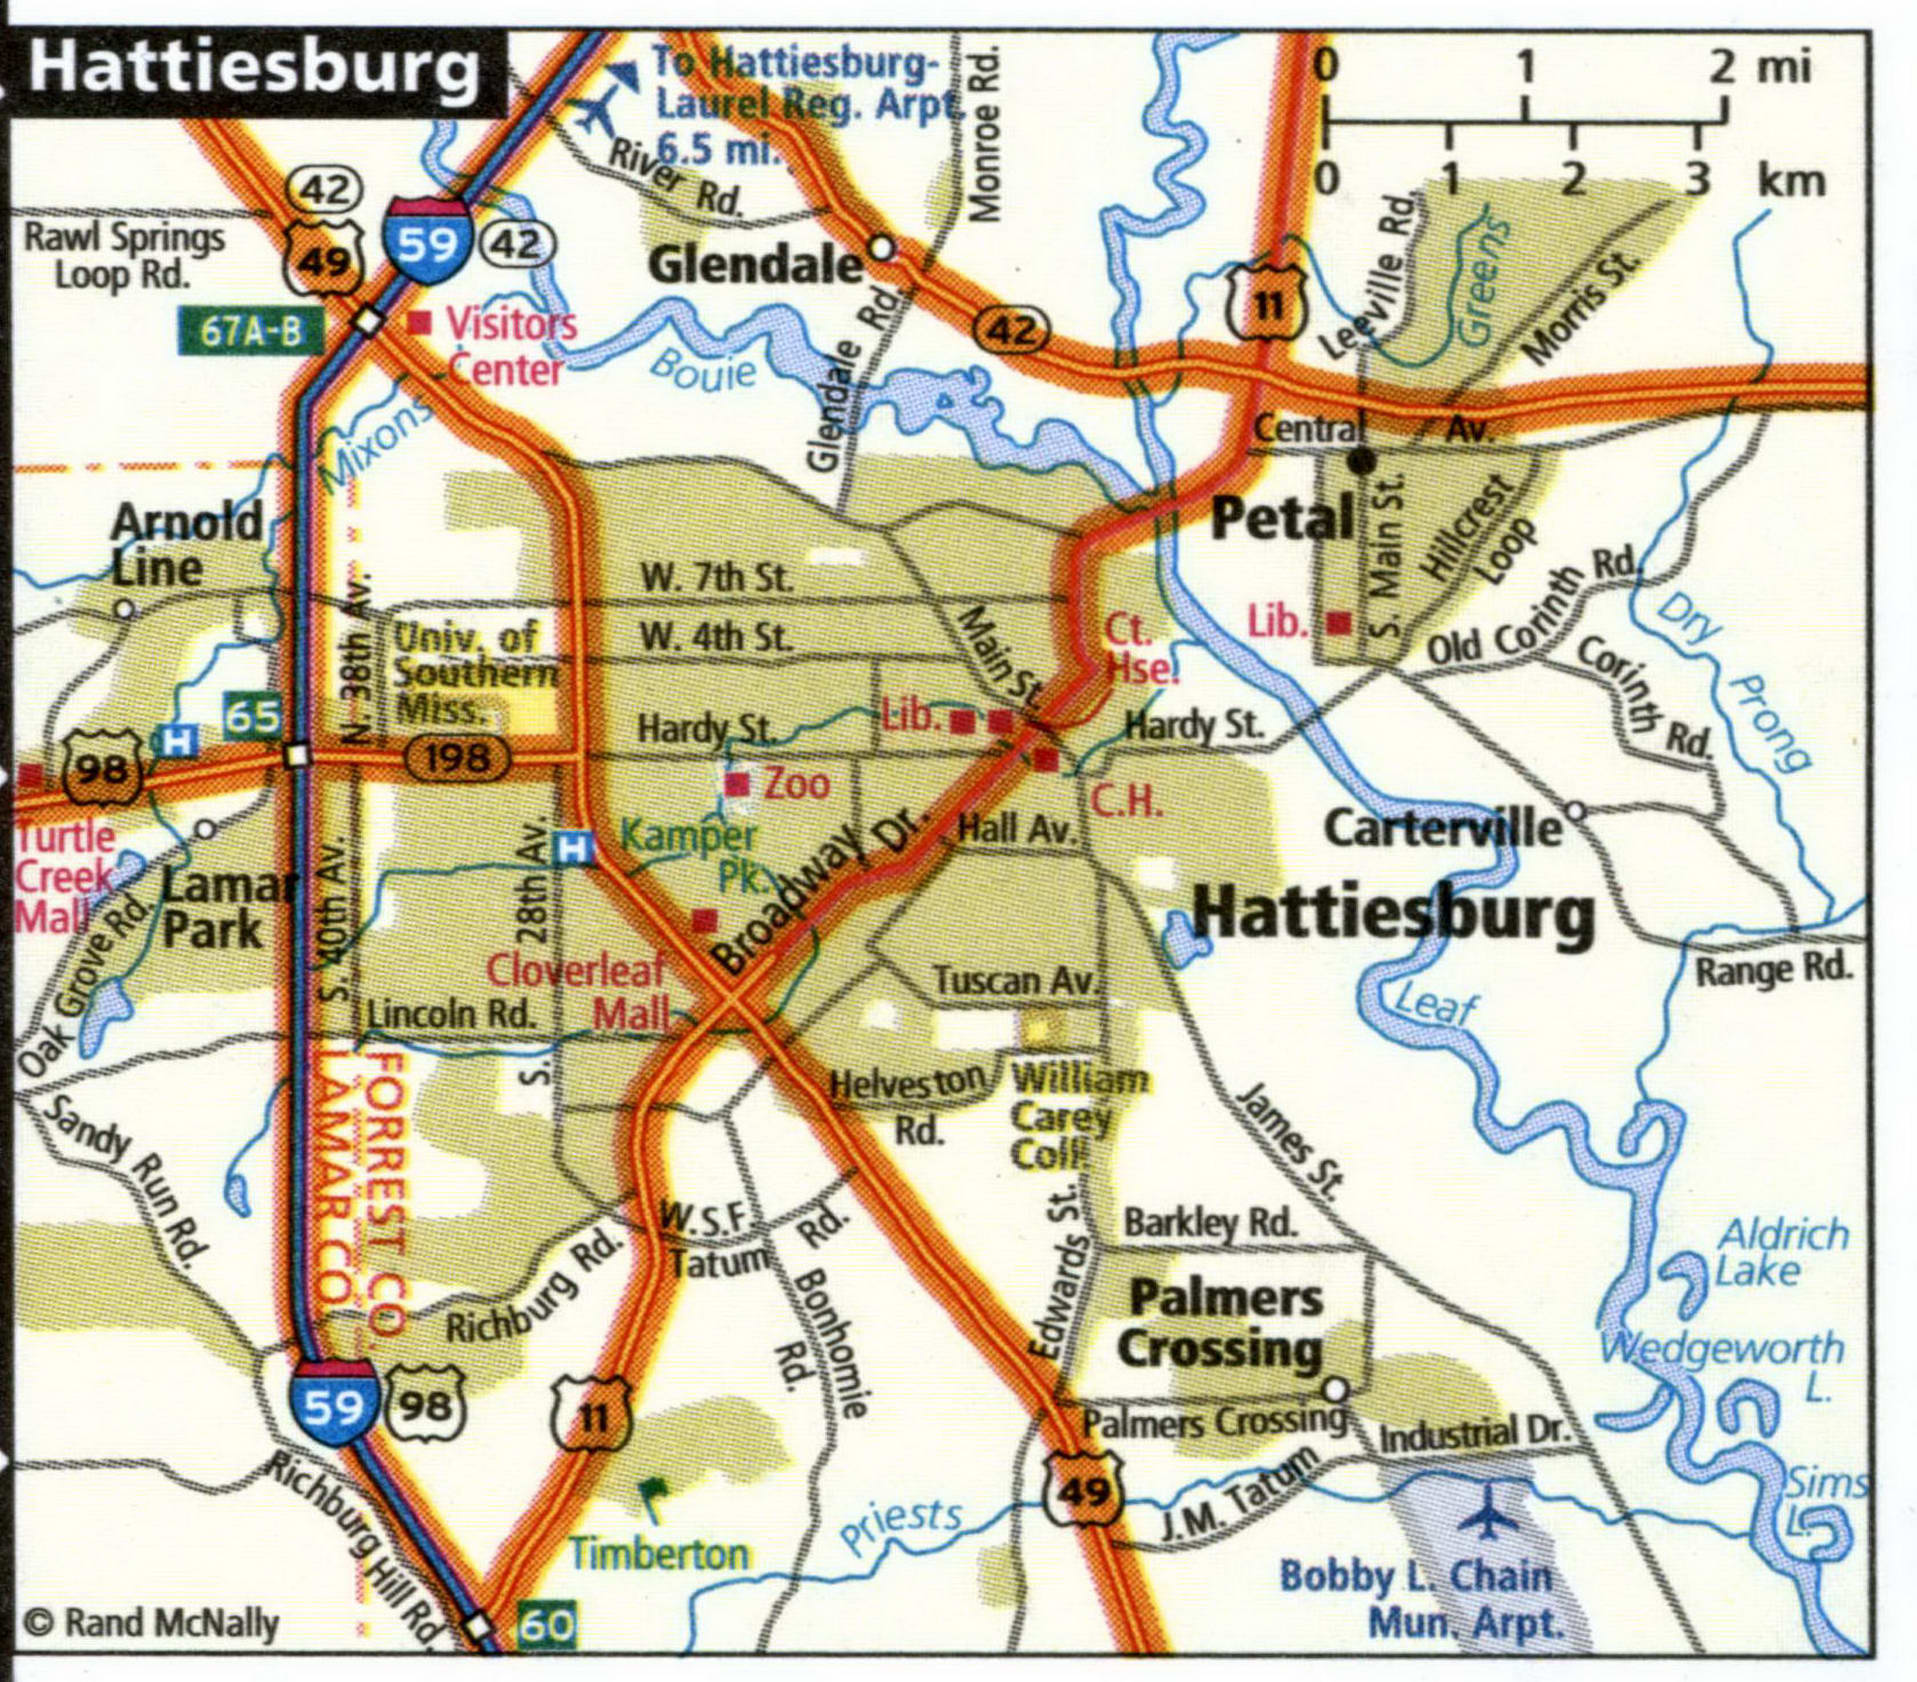 Hattiesburg map for truckers